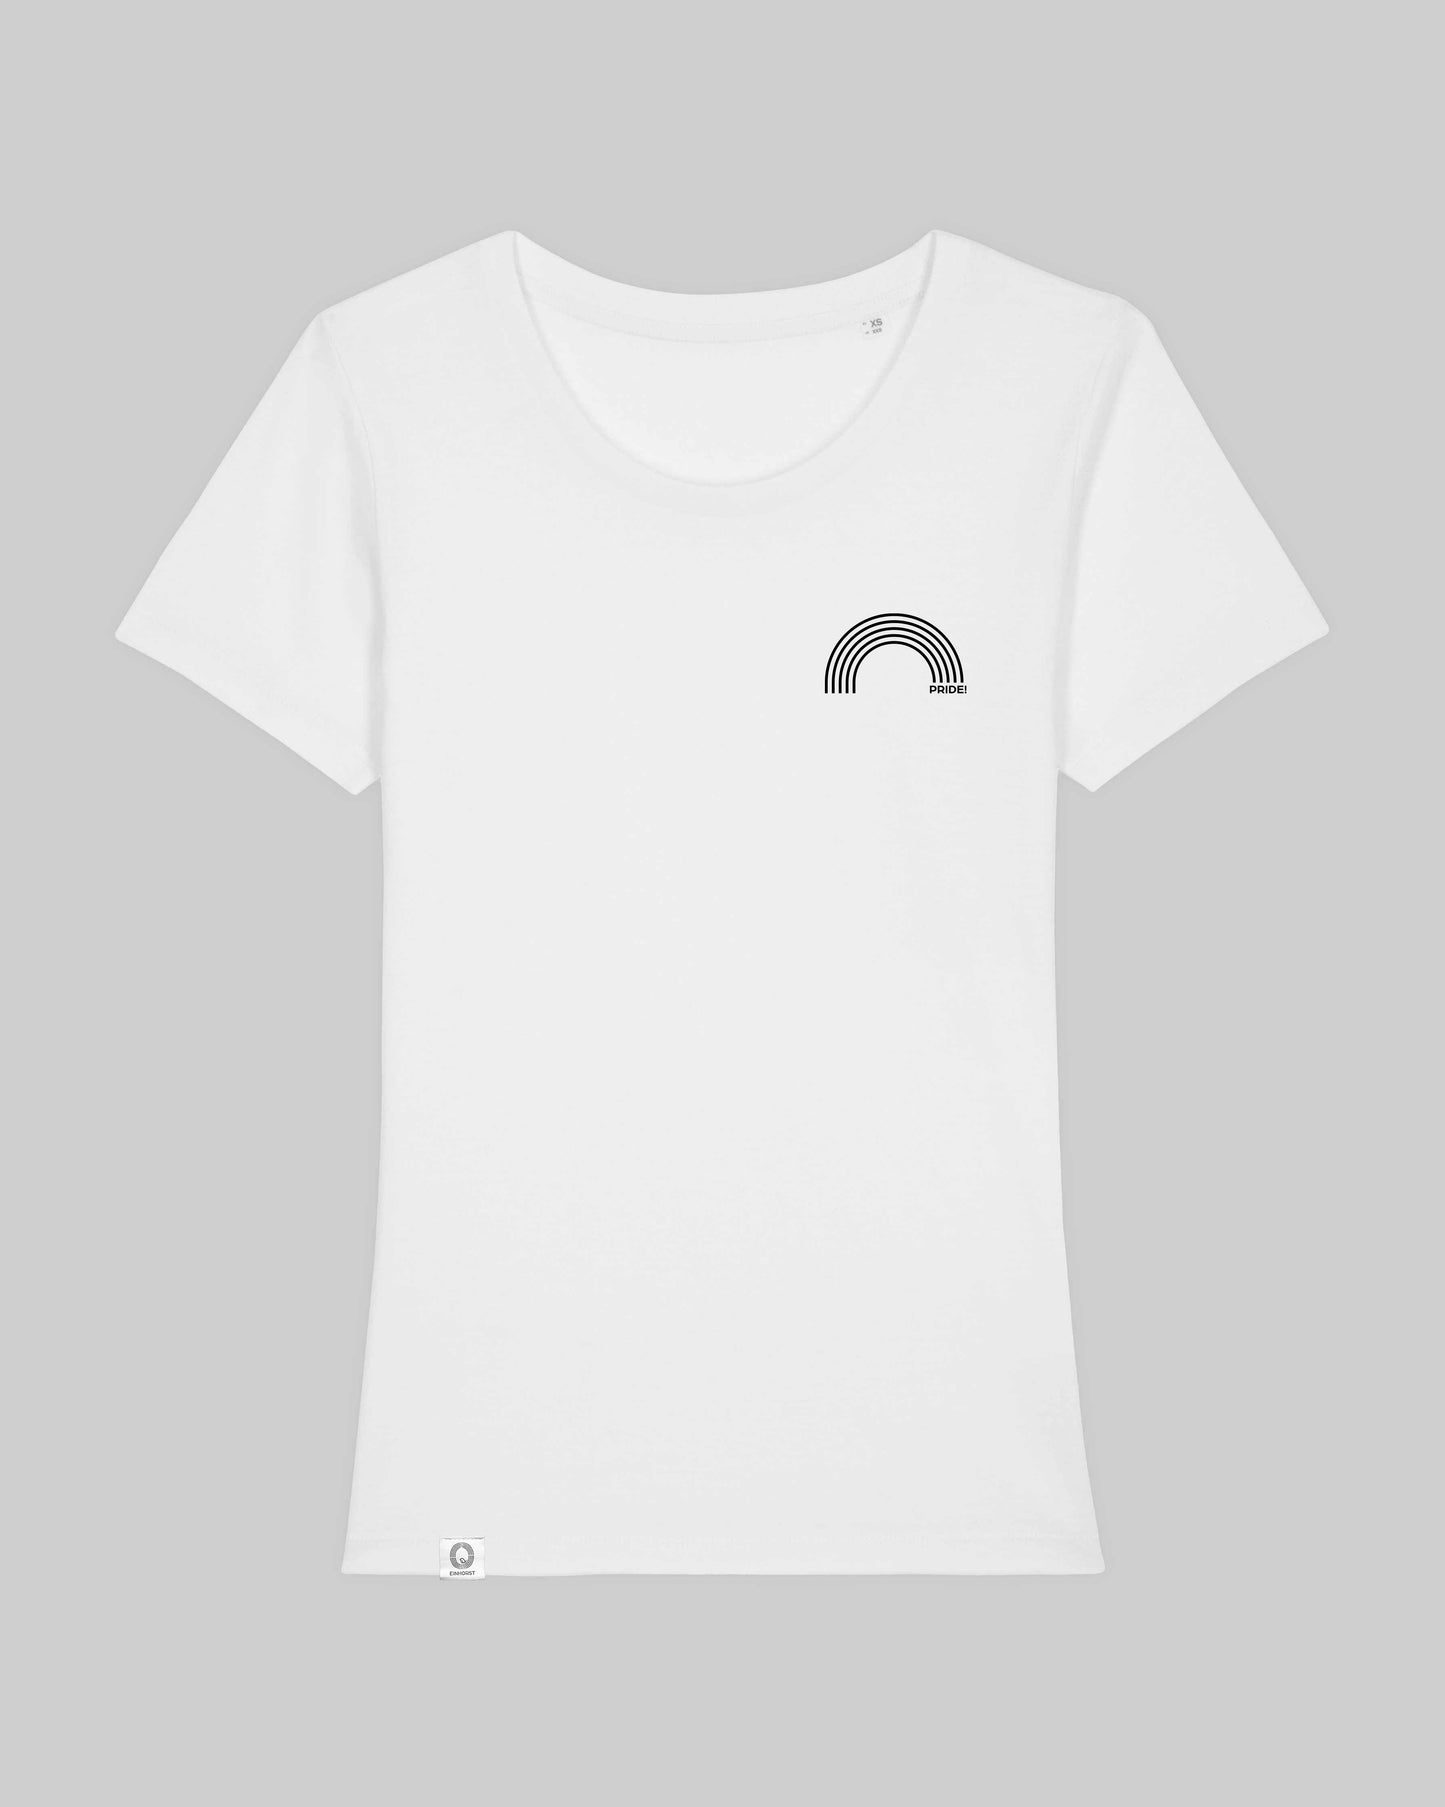 EINHORST® Organic Shirt tailliert in "Weiß" mit dem Motiv "pride Regenbogen" in der Kombination schwarzer Regenbogen mit schwarzer Schrift, Bild von Shirt von vorne